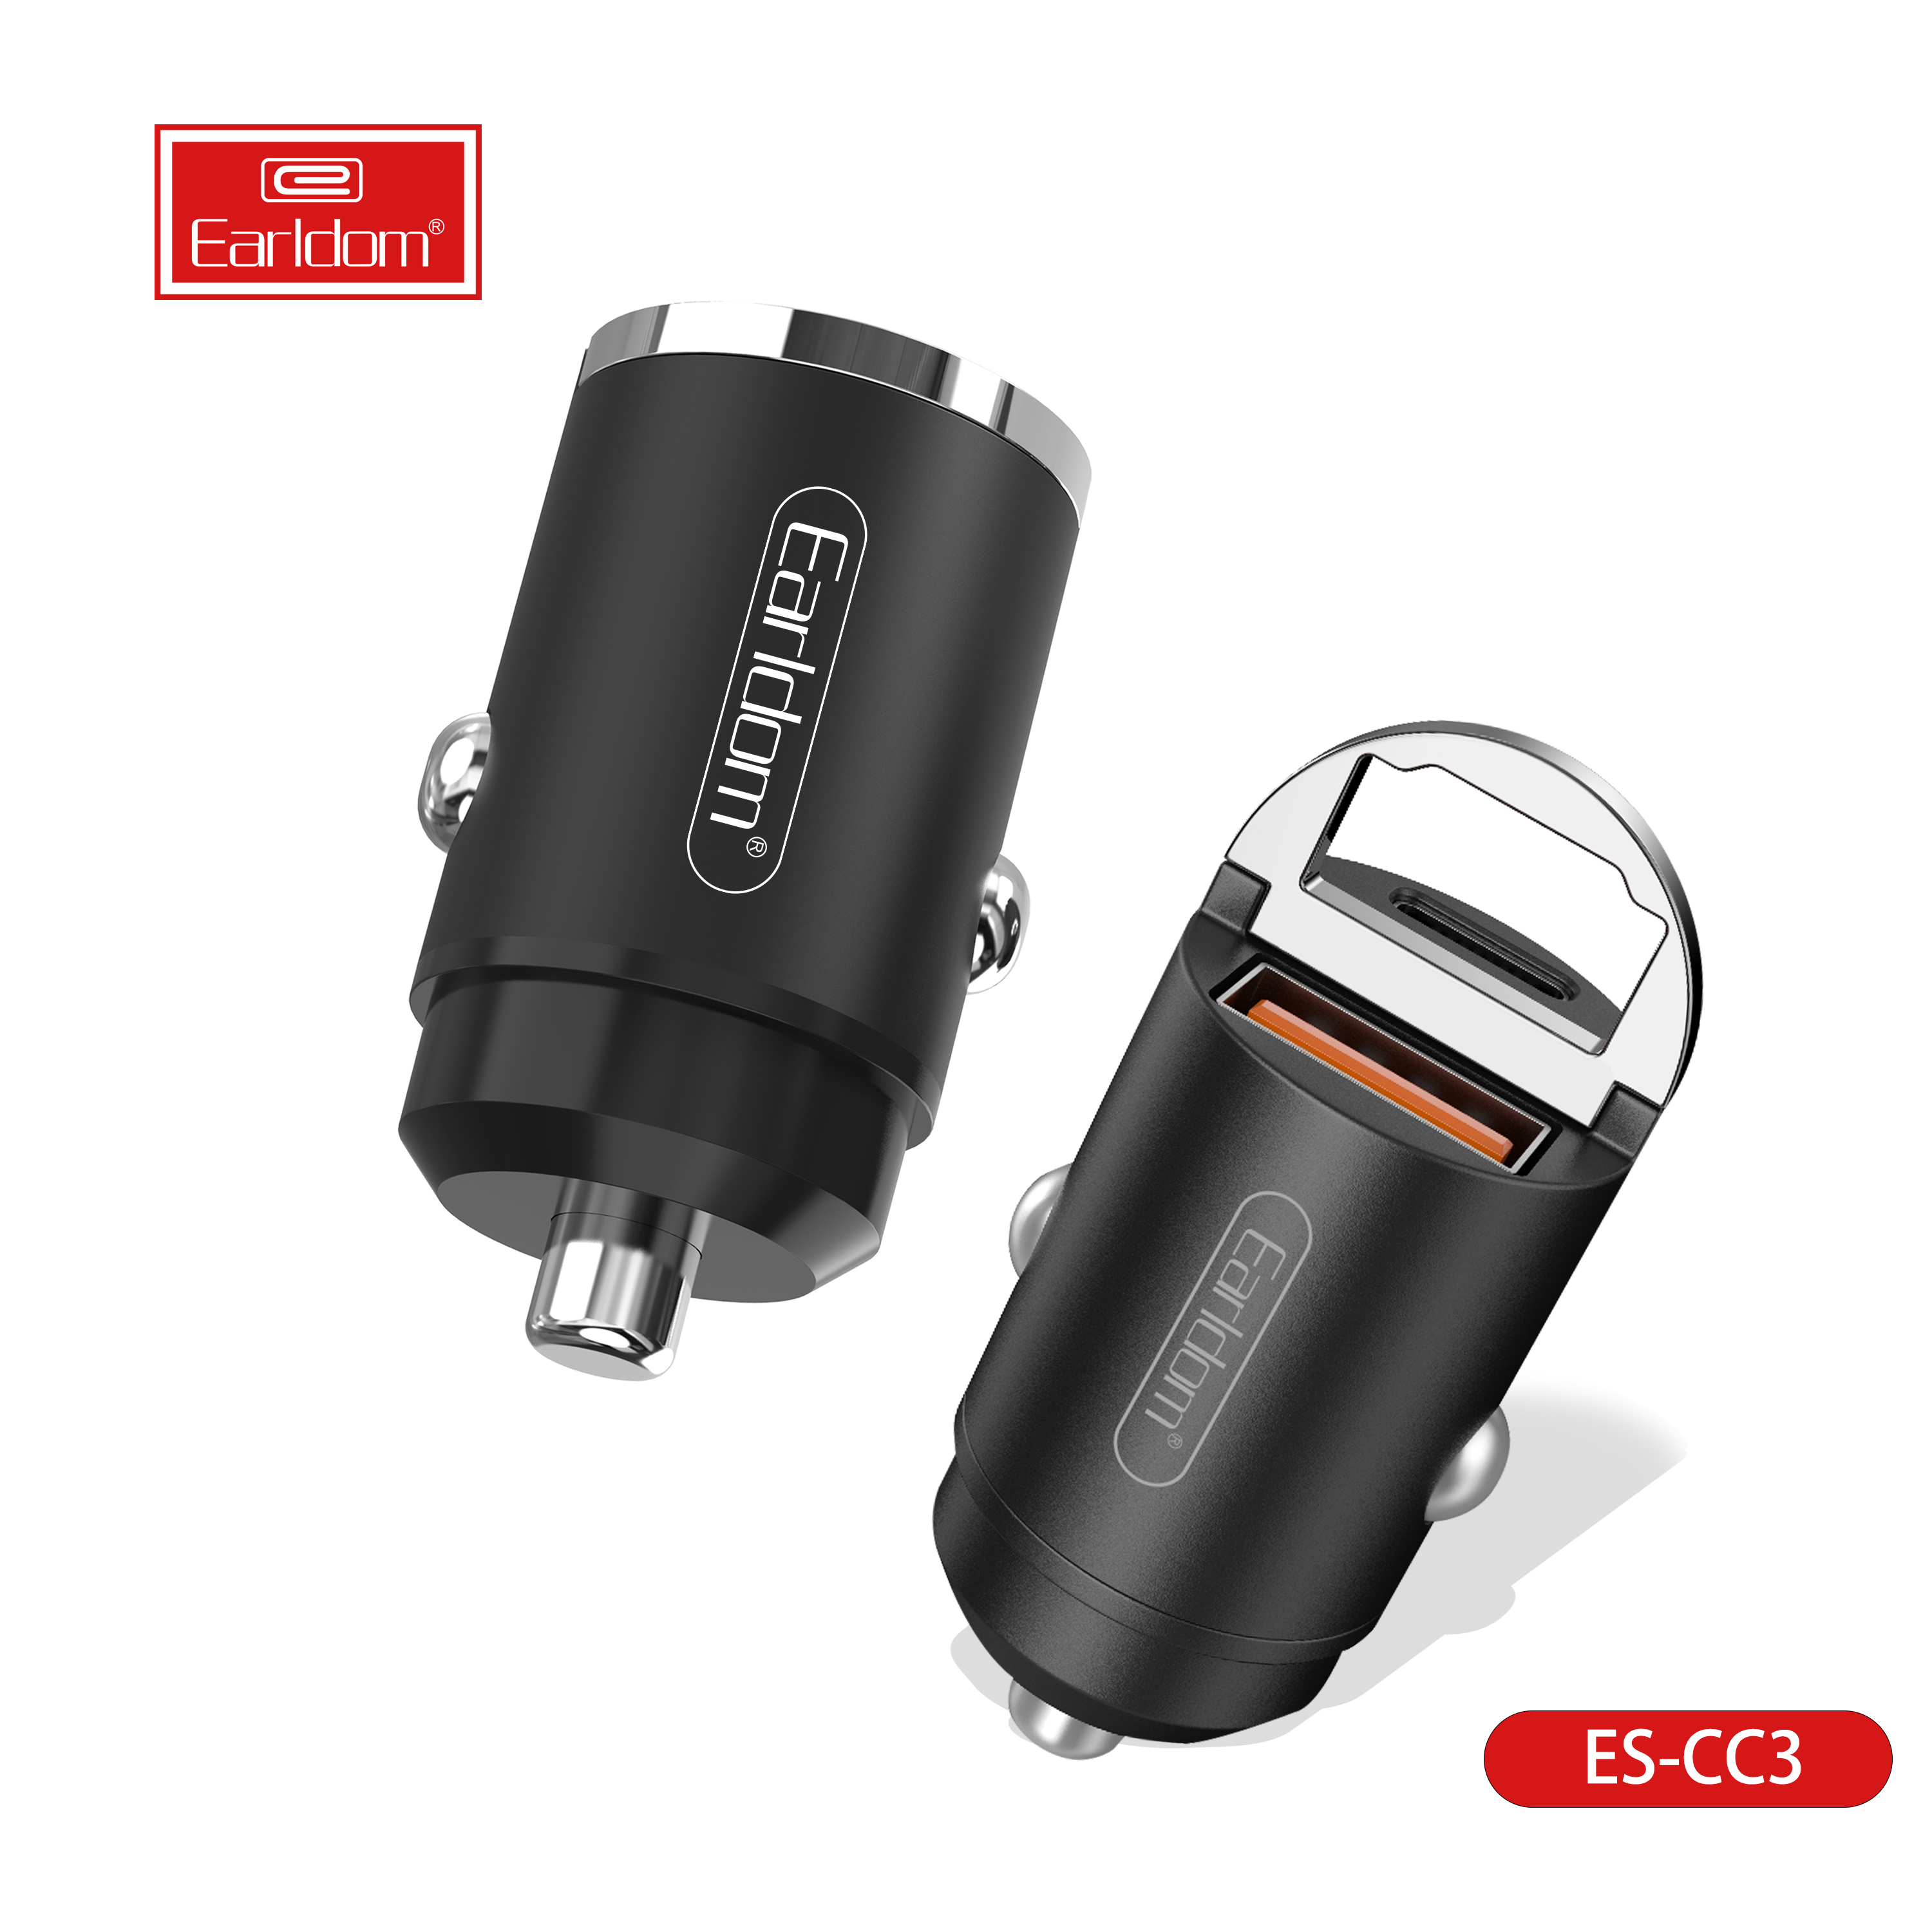 Chargeur de voiture USB CARD&Adaptateur de voitures à double ports QC 3.0 compatible avec iPhone 12/12 Pro / max / 12 mini / iPhone 11 / pro / max / xr / xs / max / 8, Galaxy S21 / 20/10/9